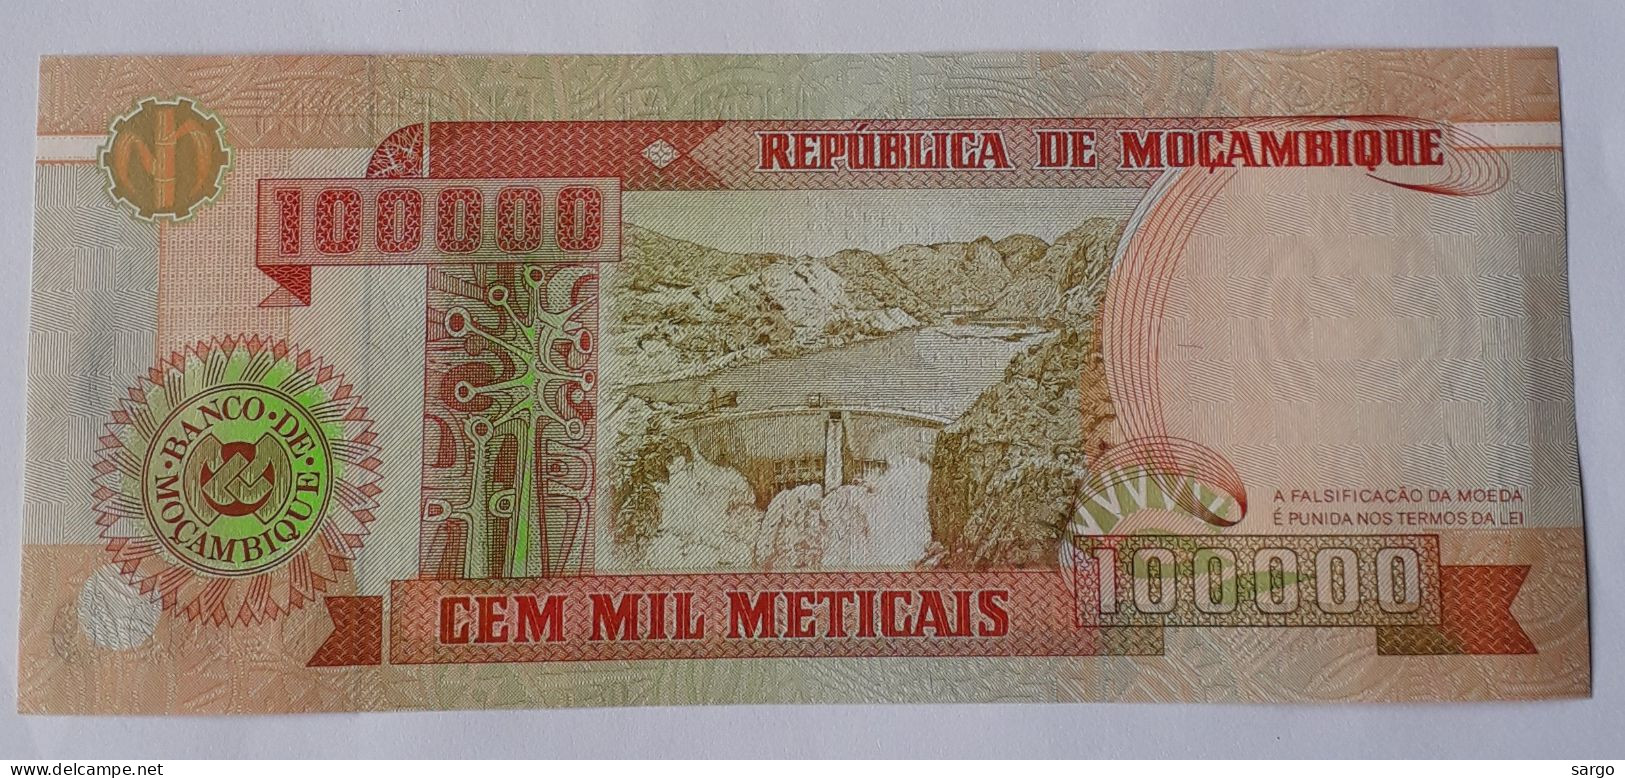 MOZAMBIQUE - 100.000 METICAIS - P 139  (1993)  - UNC - BANKNOTES - PAPER MONEY - CARTAMONETA - - Mozambique